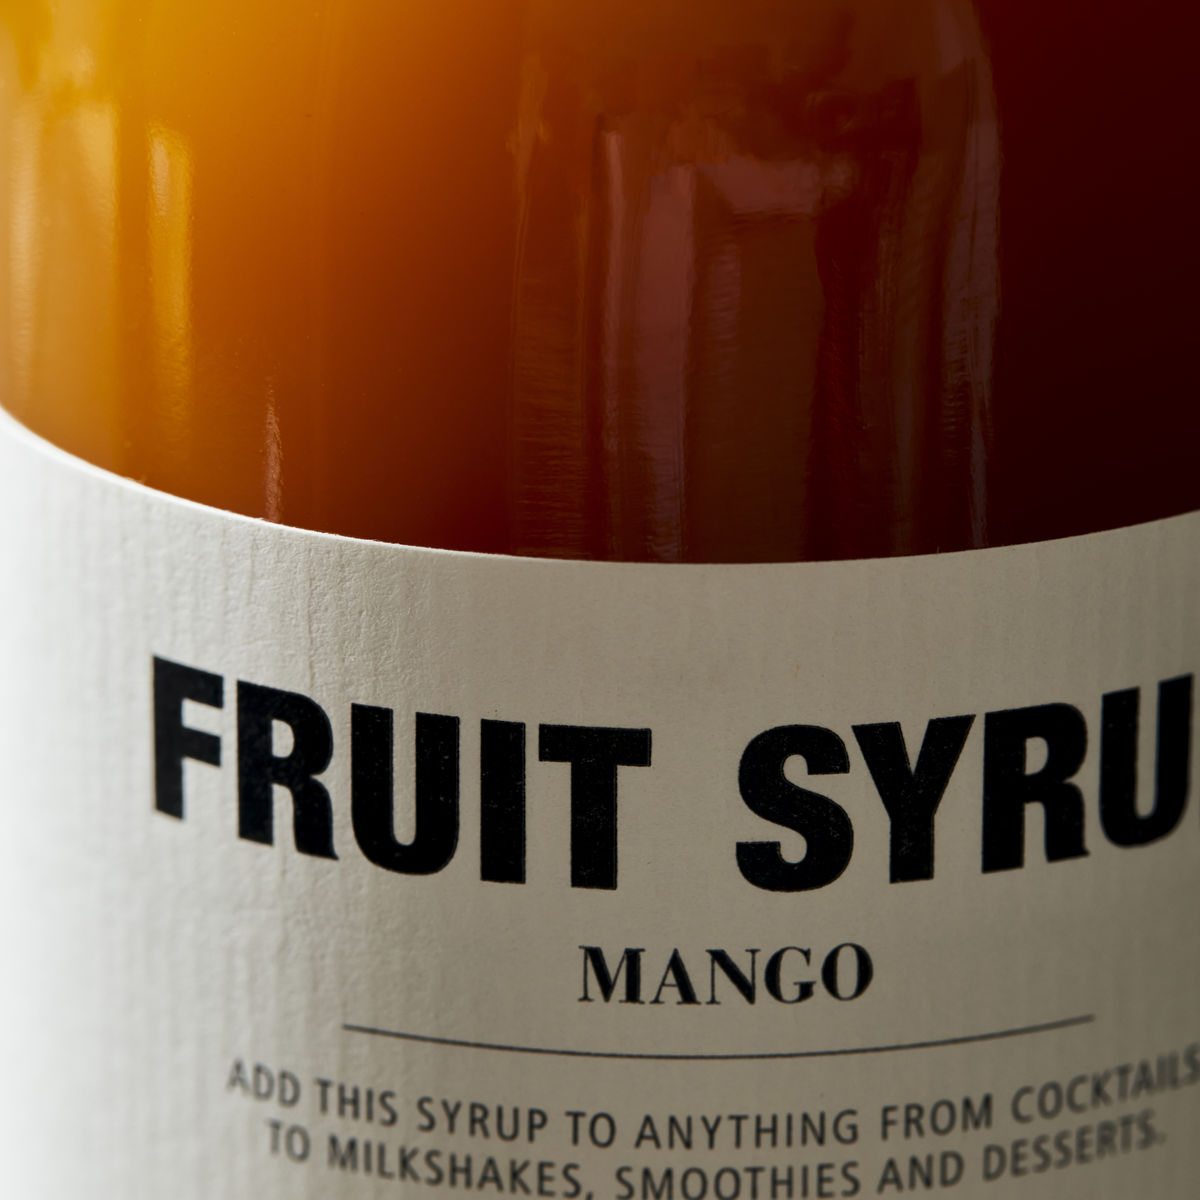 Fruit syrup, Mango